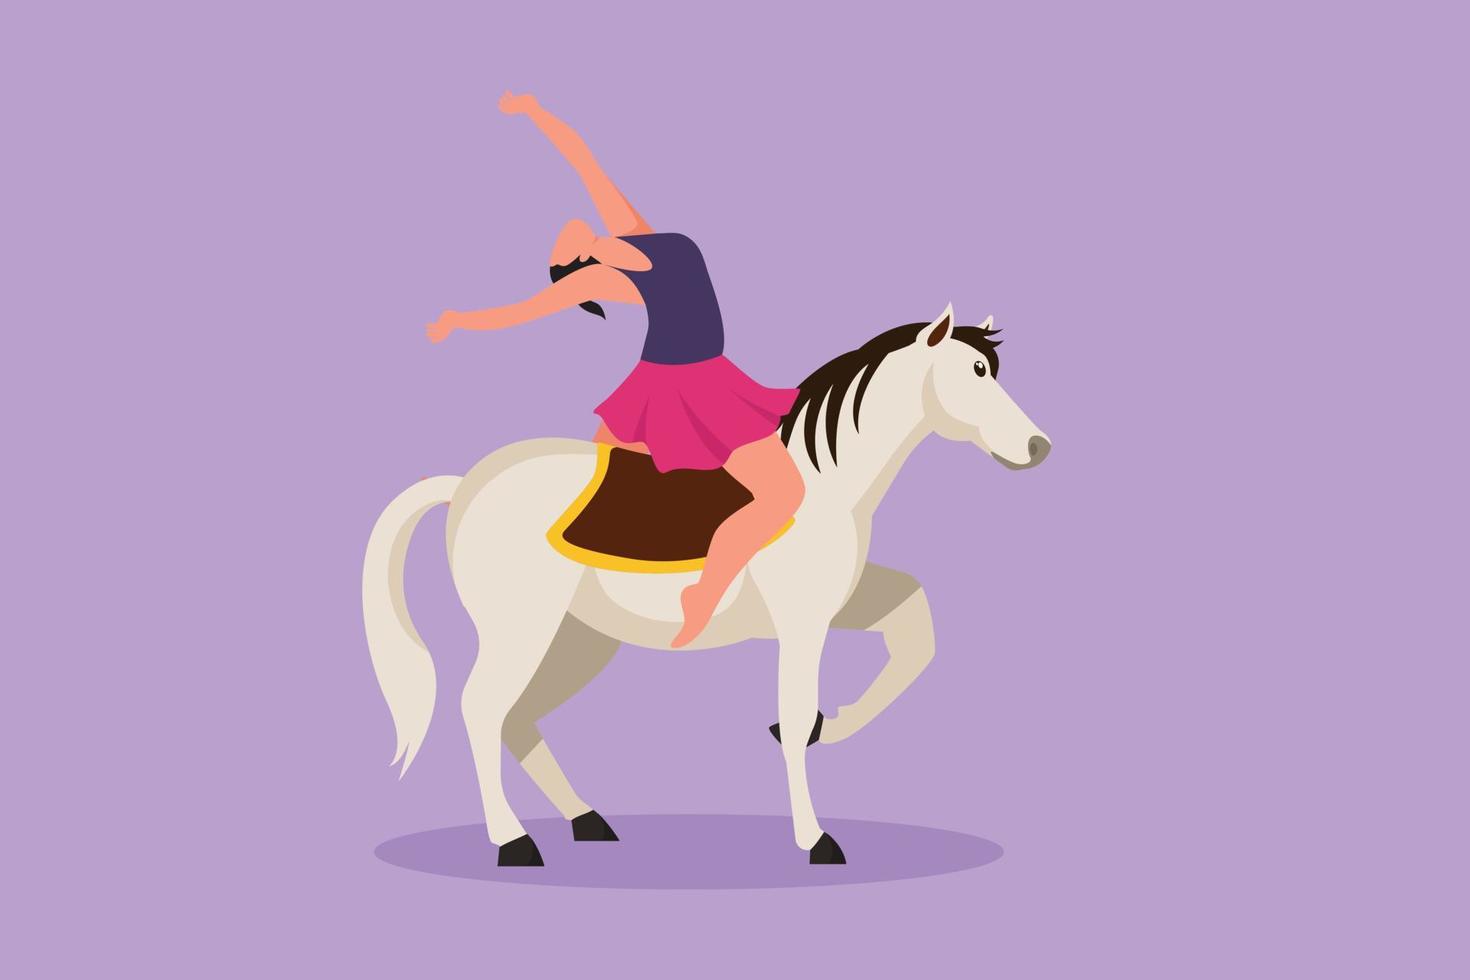 el acróbata femenino de dibujo plano del personaje actúa en un caballo de circo mientras baila a caballo y levanta la mano. el caballo se une al baile. entretenimiento de eventos de espectáculos de circo. ilustración vectorial de diseño de dibujos animados vector